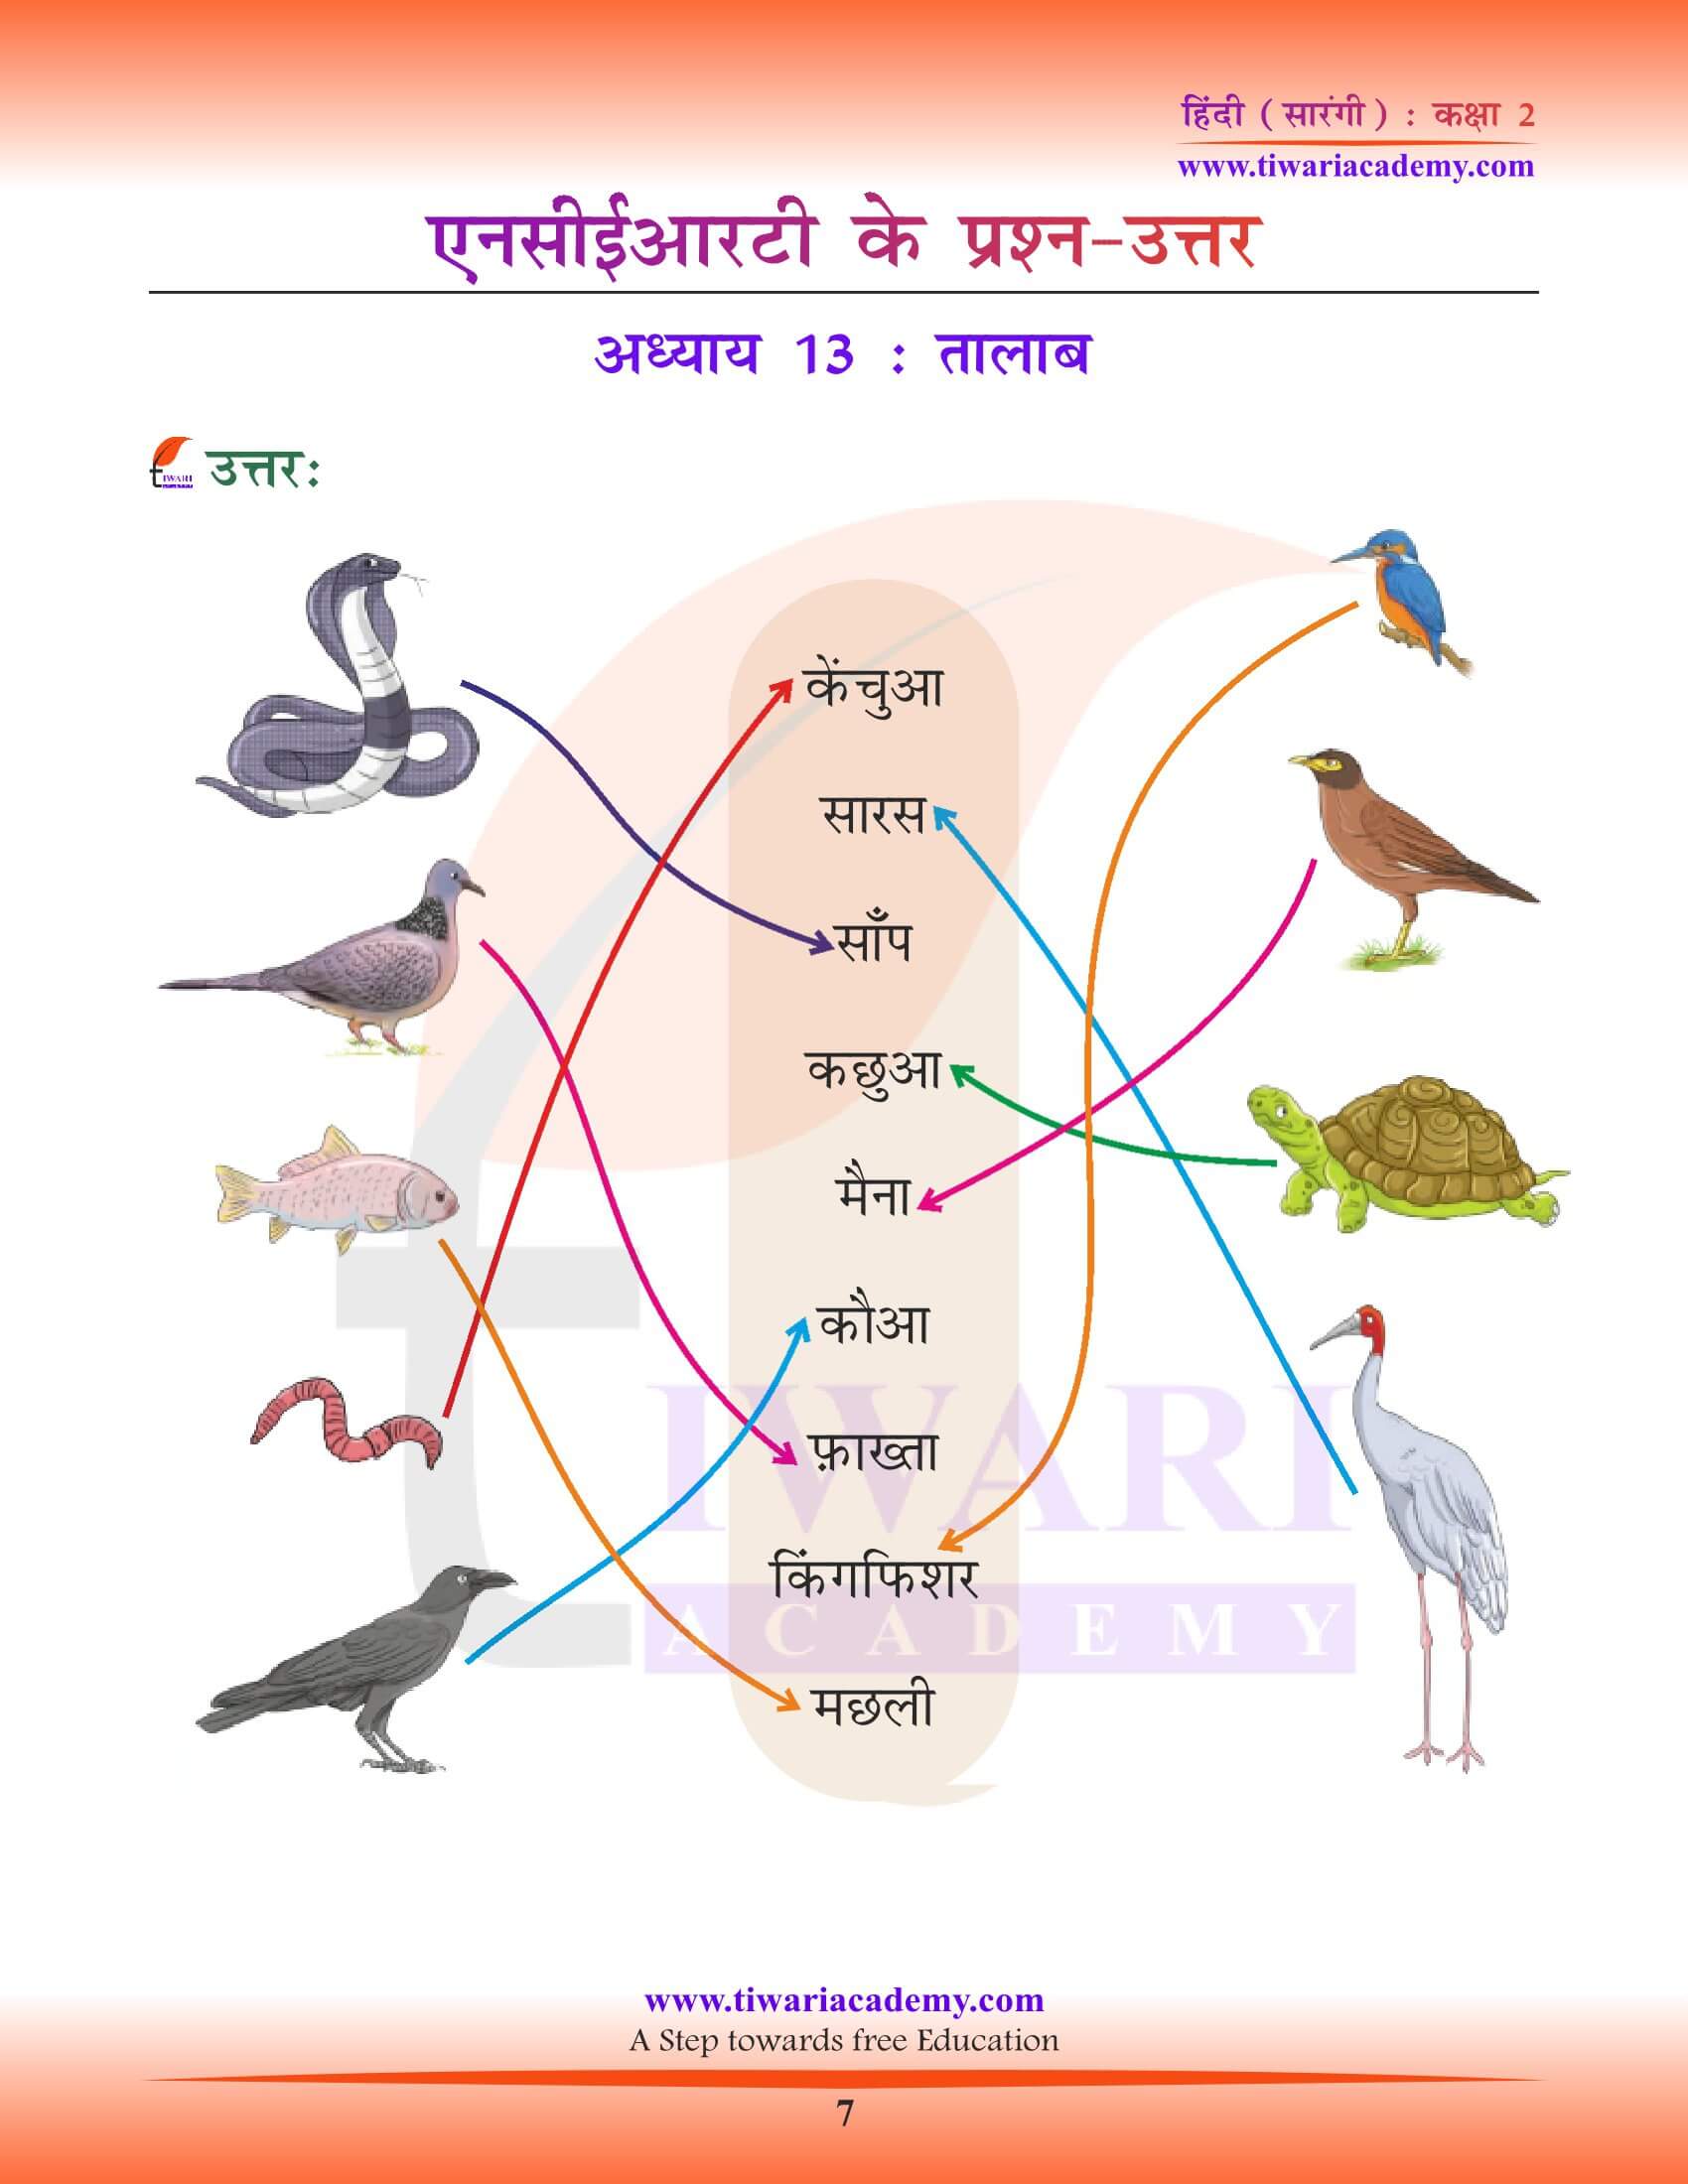 कक्षा 2 हिंदी सारंगी अध्याय 13 अभ्यास के हल